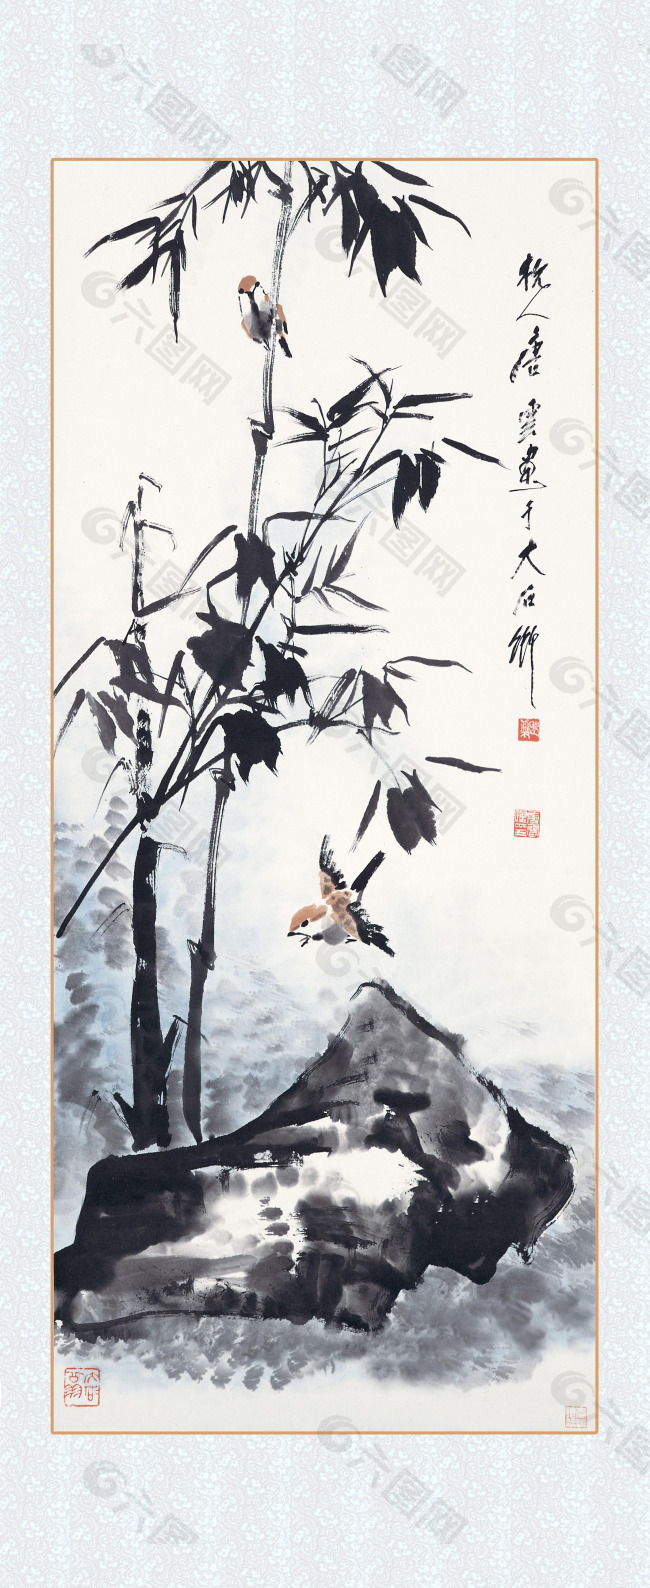 中国水墨画竹子图片